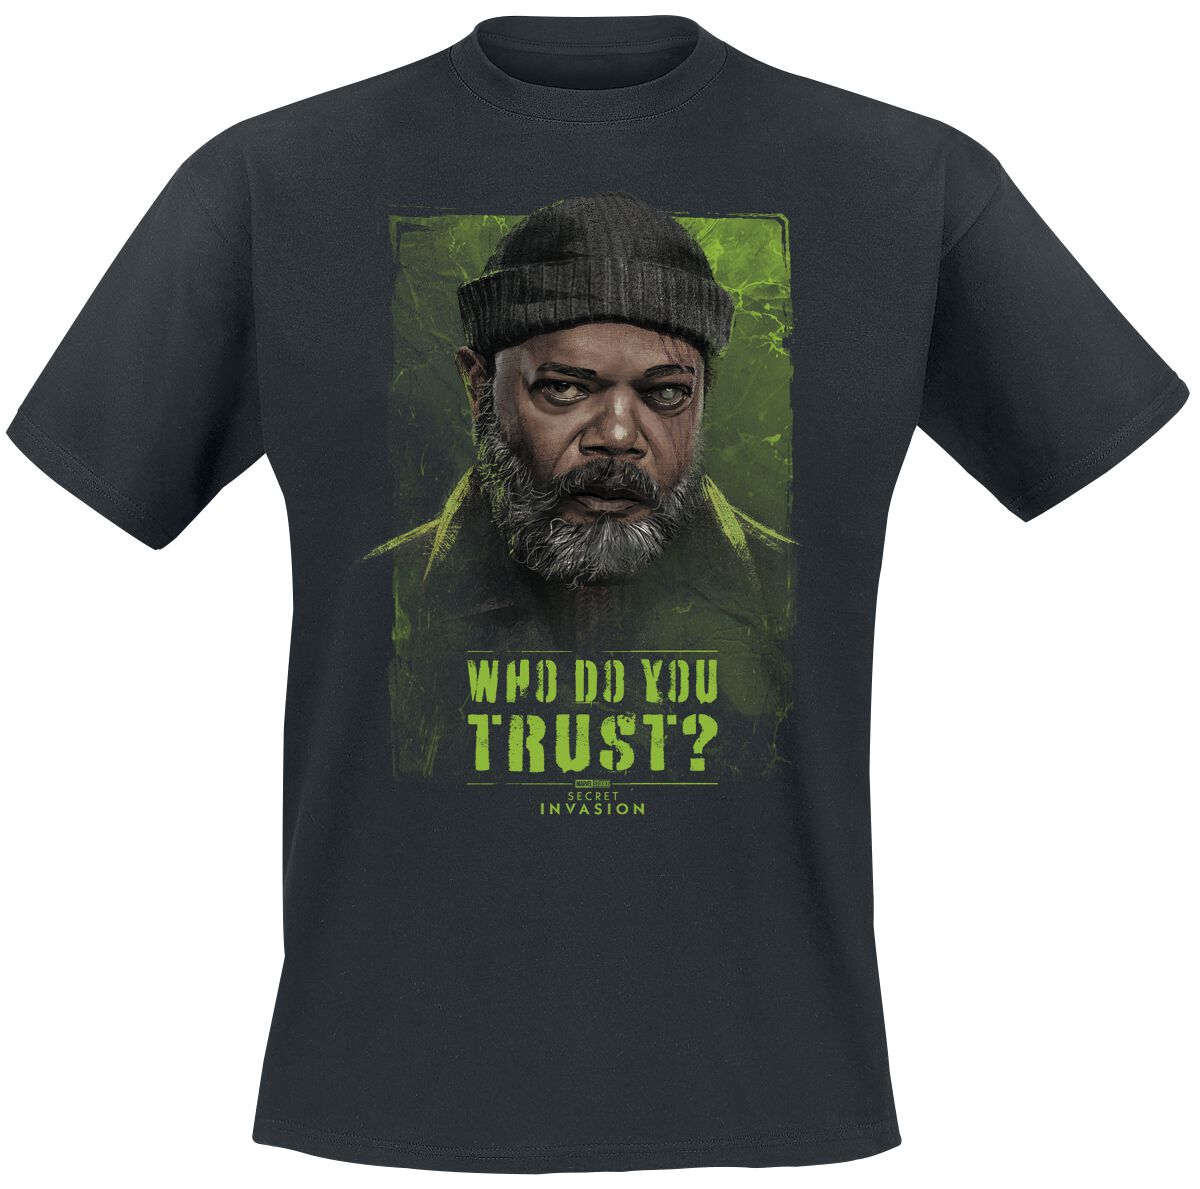 Secret Invasion - Marvel T-Shirt - Who Do You Trust? Nick Fury - S bis XXL - für Männer - Größe XL - schwarz  - EMP exklusives Merchandise!